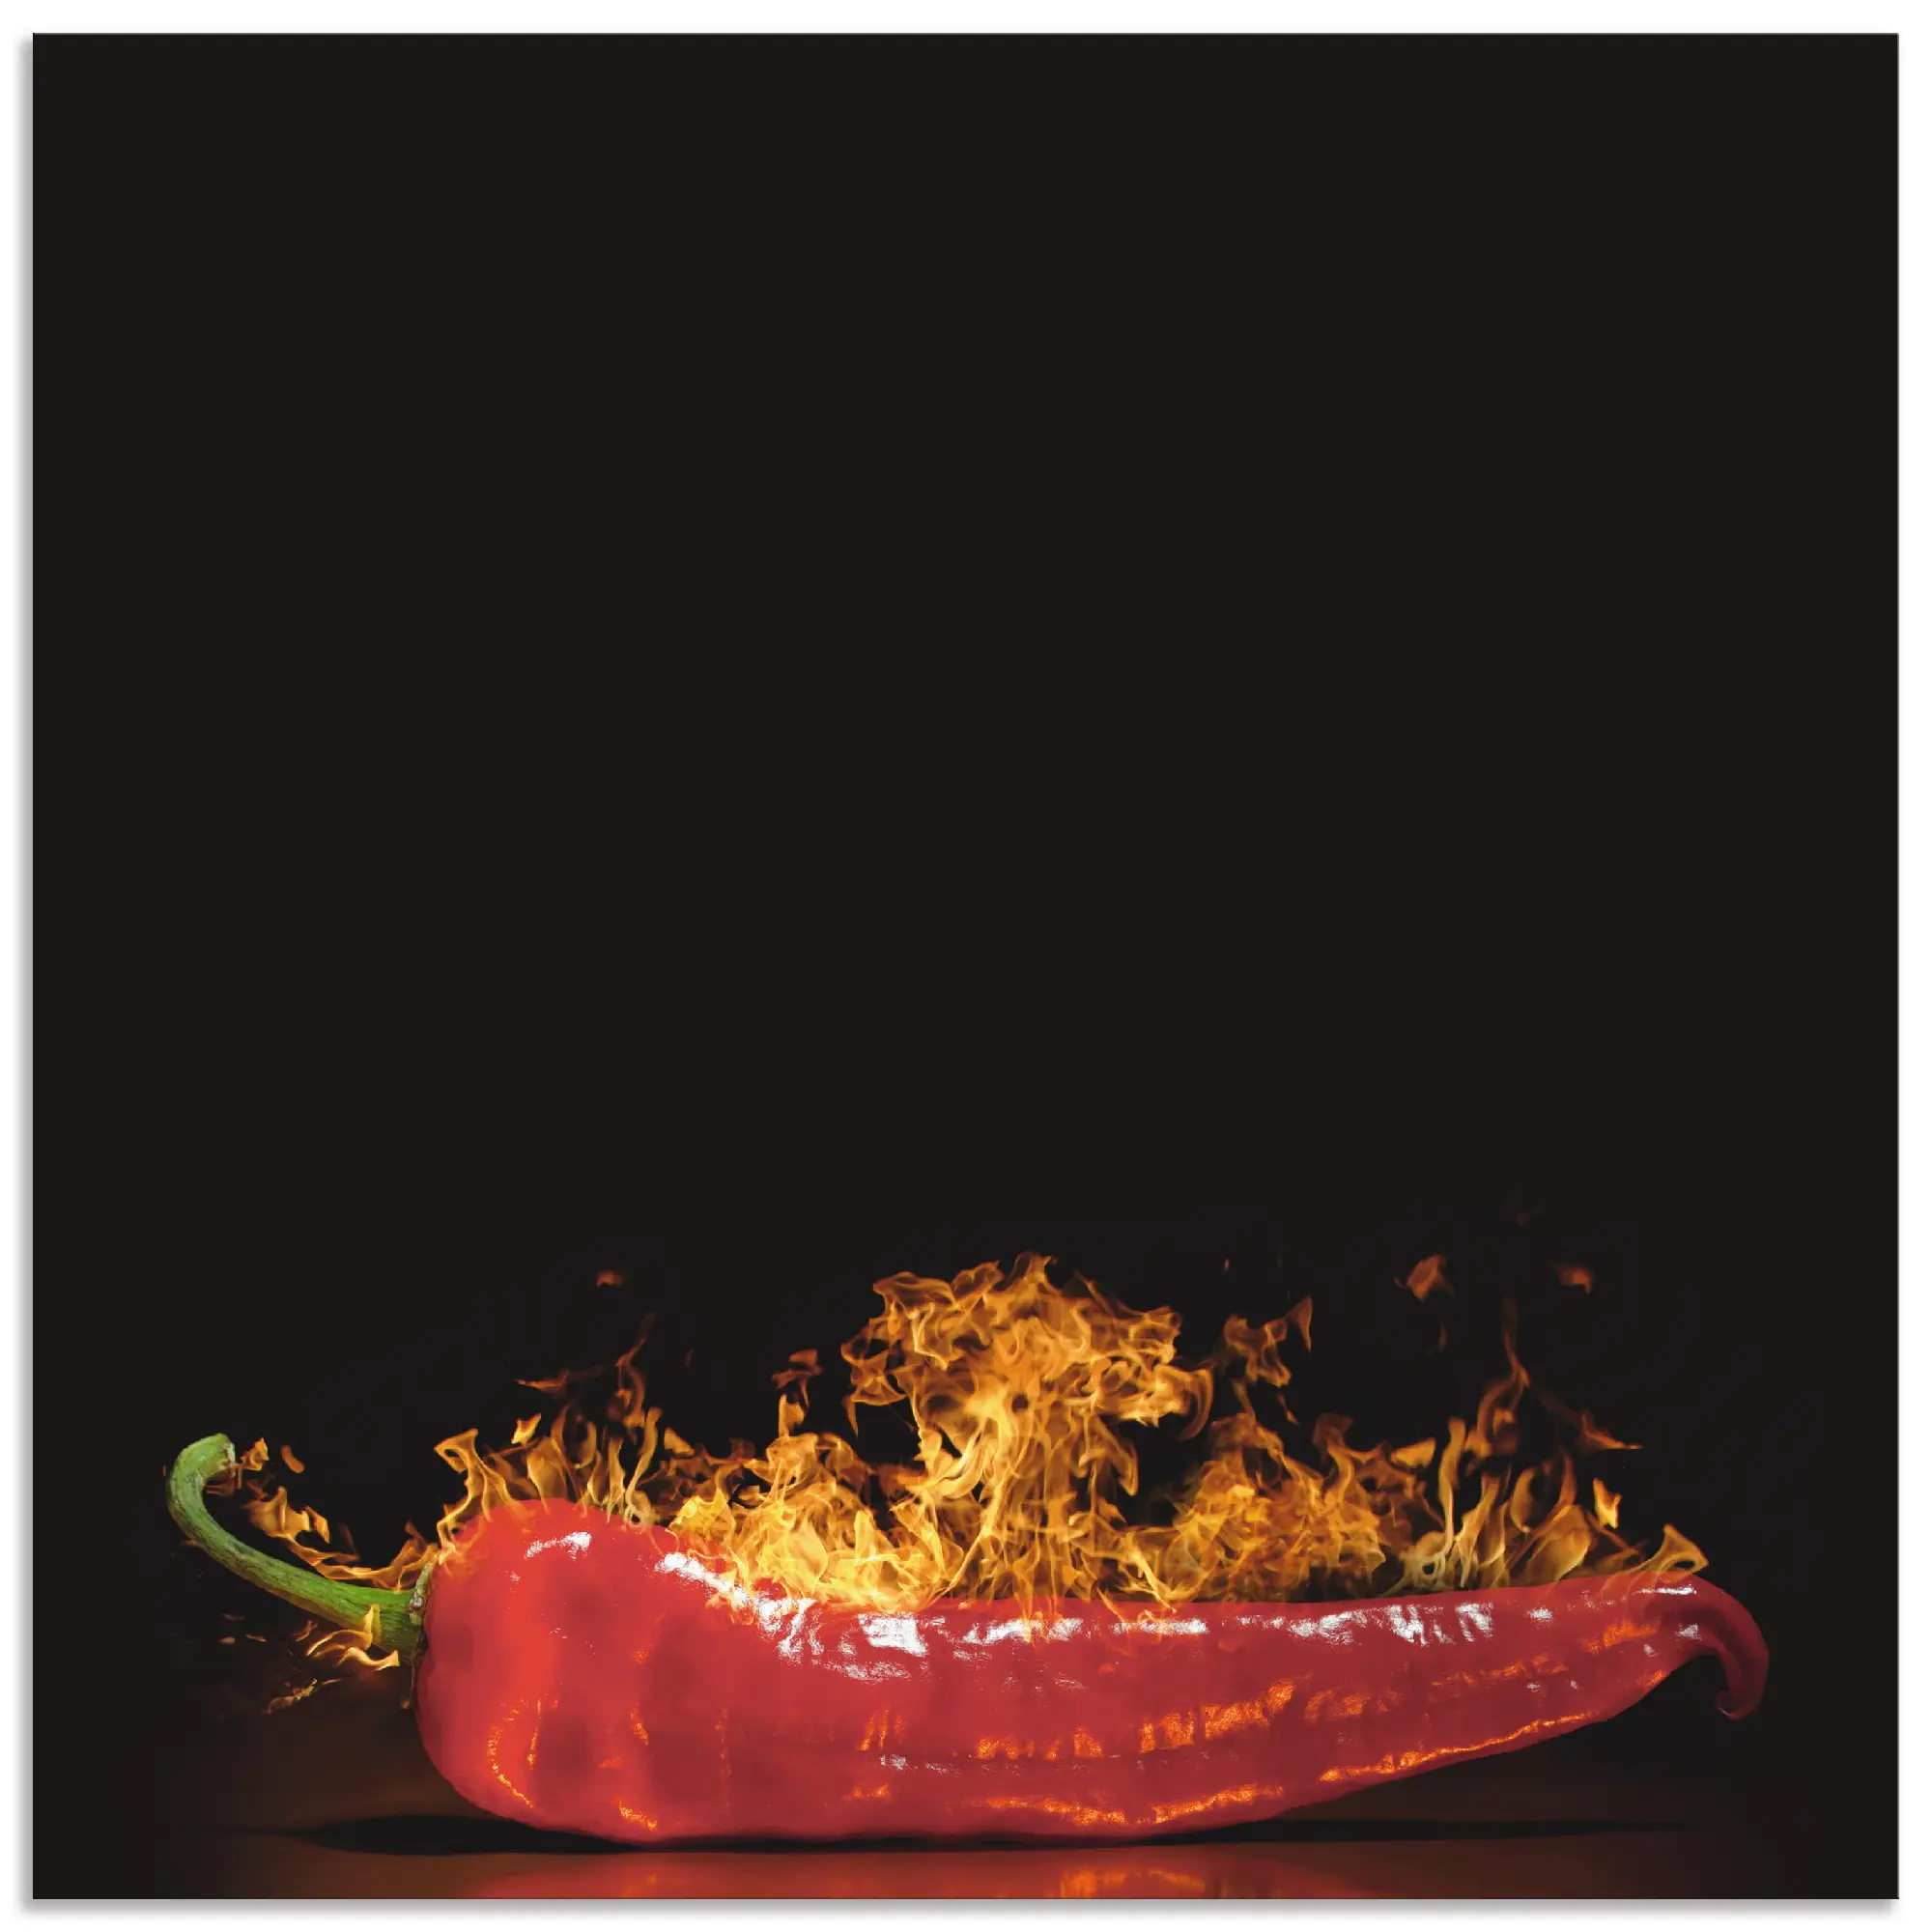 Alu R眉ckwand - Hot Chili